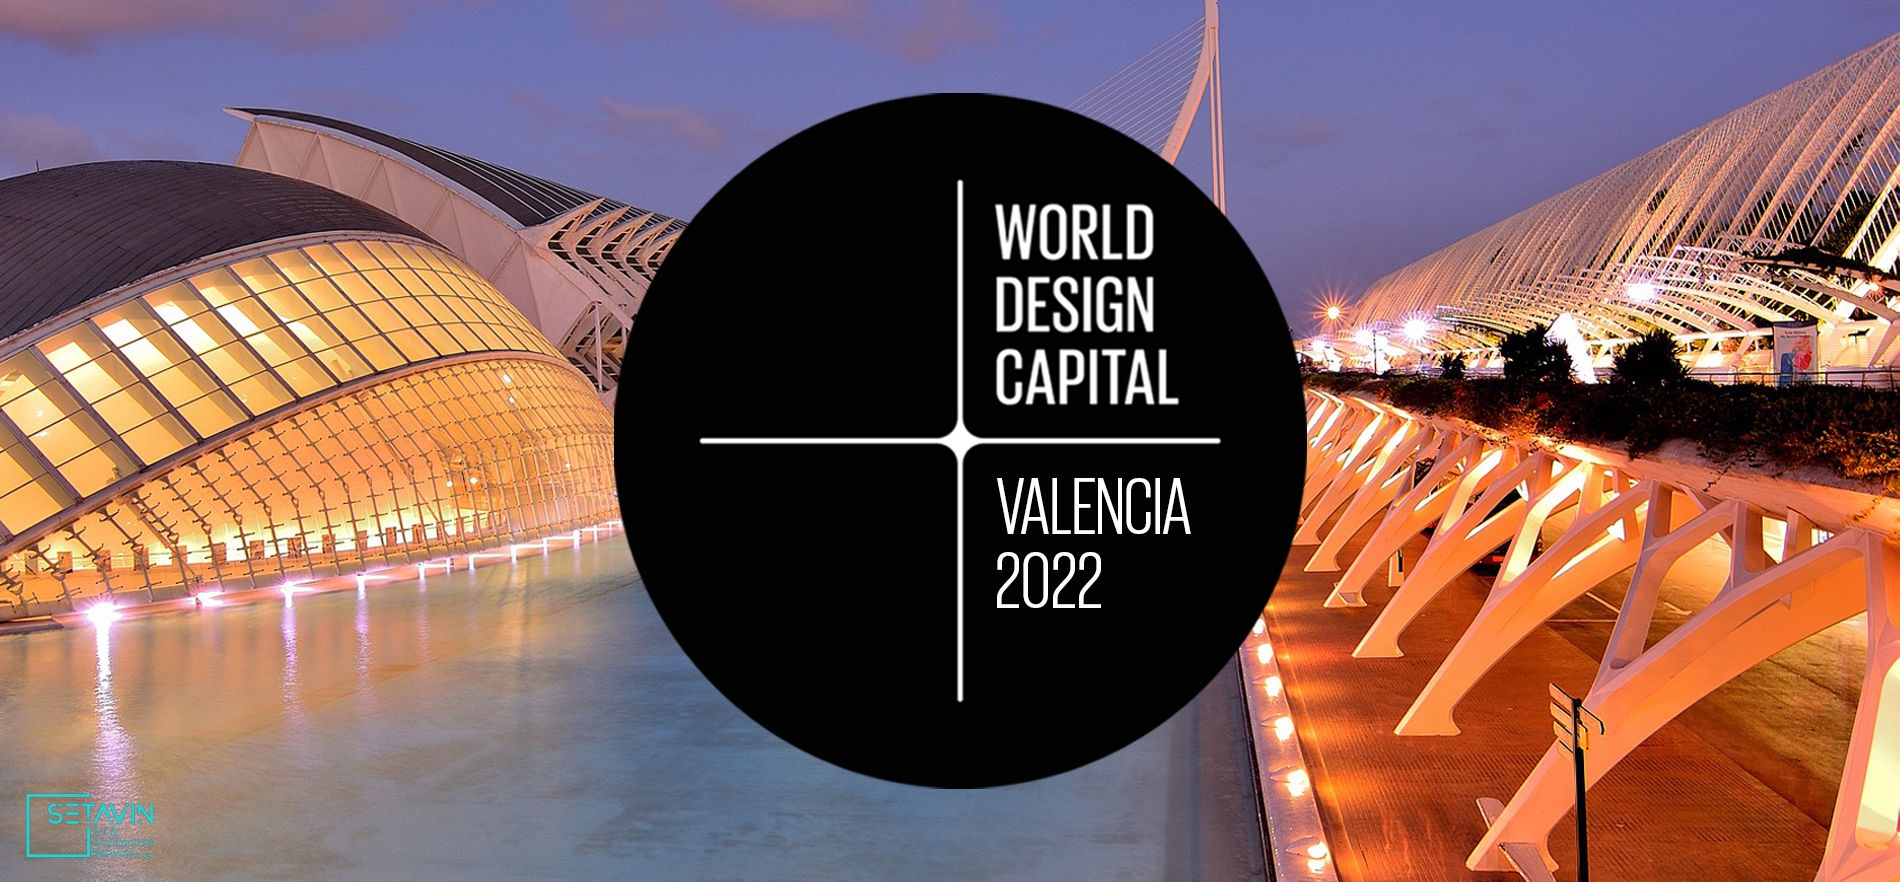 والنسیا ، پایتخت طراحی جهان , سال ۲۰۲۲ , پایتخت طراحی , سازمان جهانی طراحی , WDO , تورین ، سئول ، هلسینکی ، کیپ‌تاون ، تایپه ، مکزیکو‌سیتی , لیل